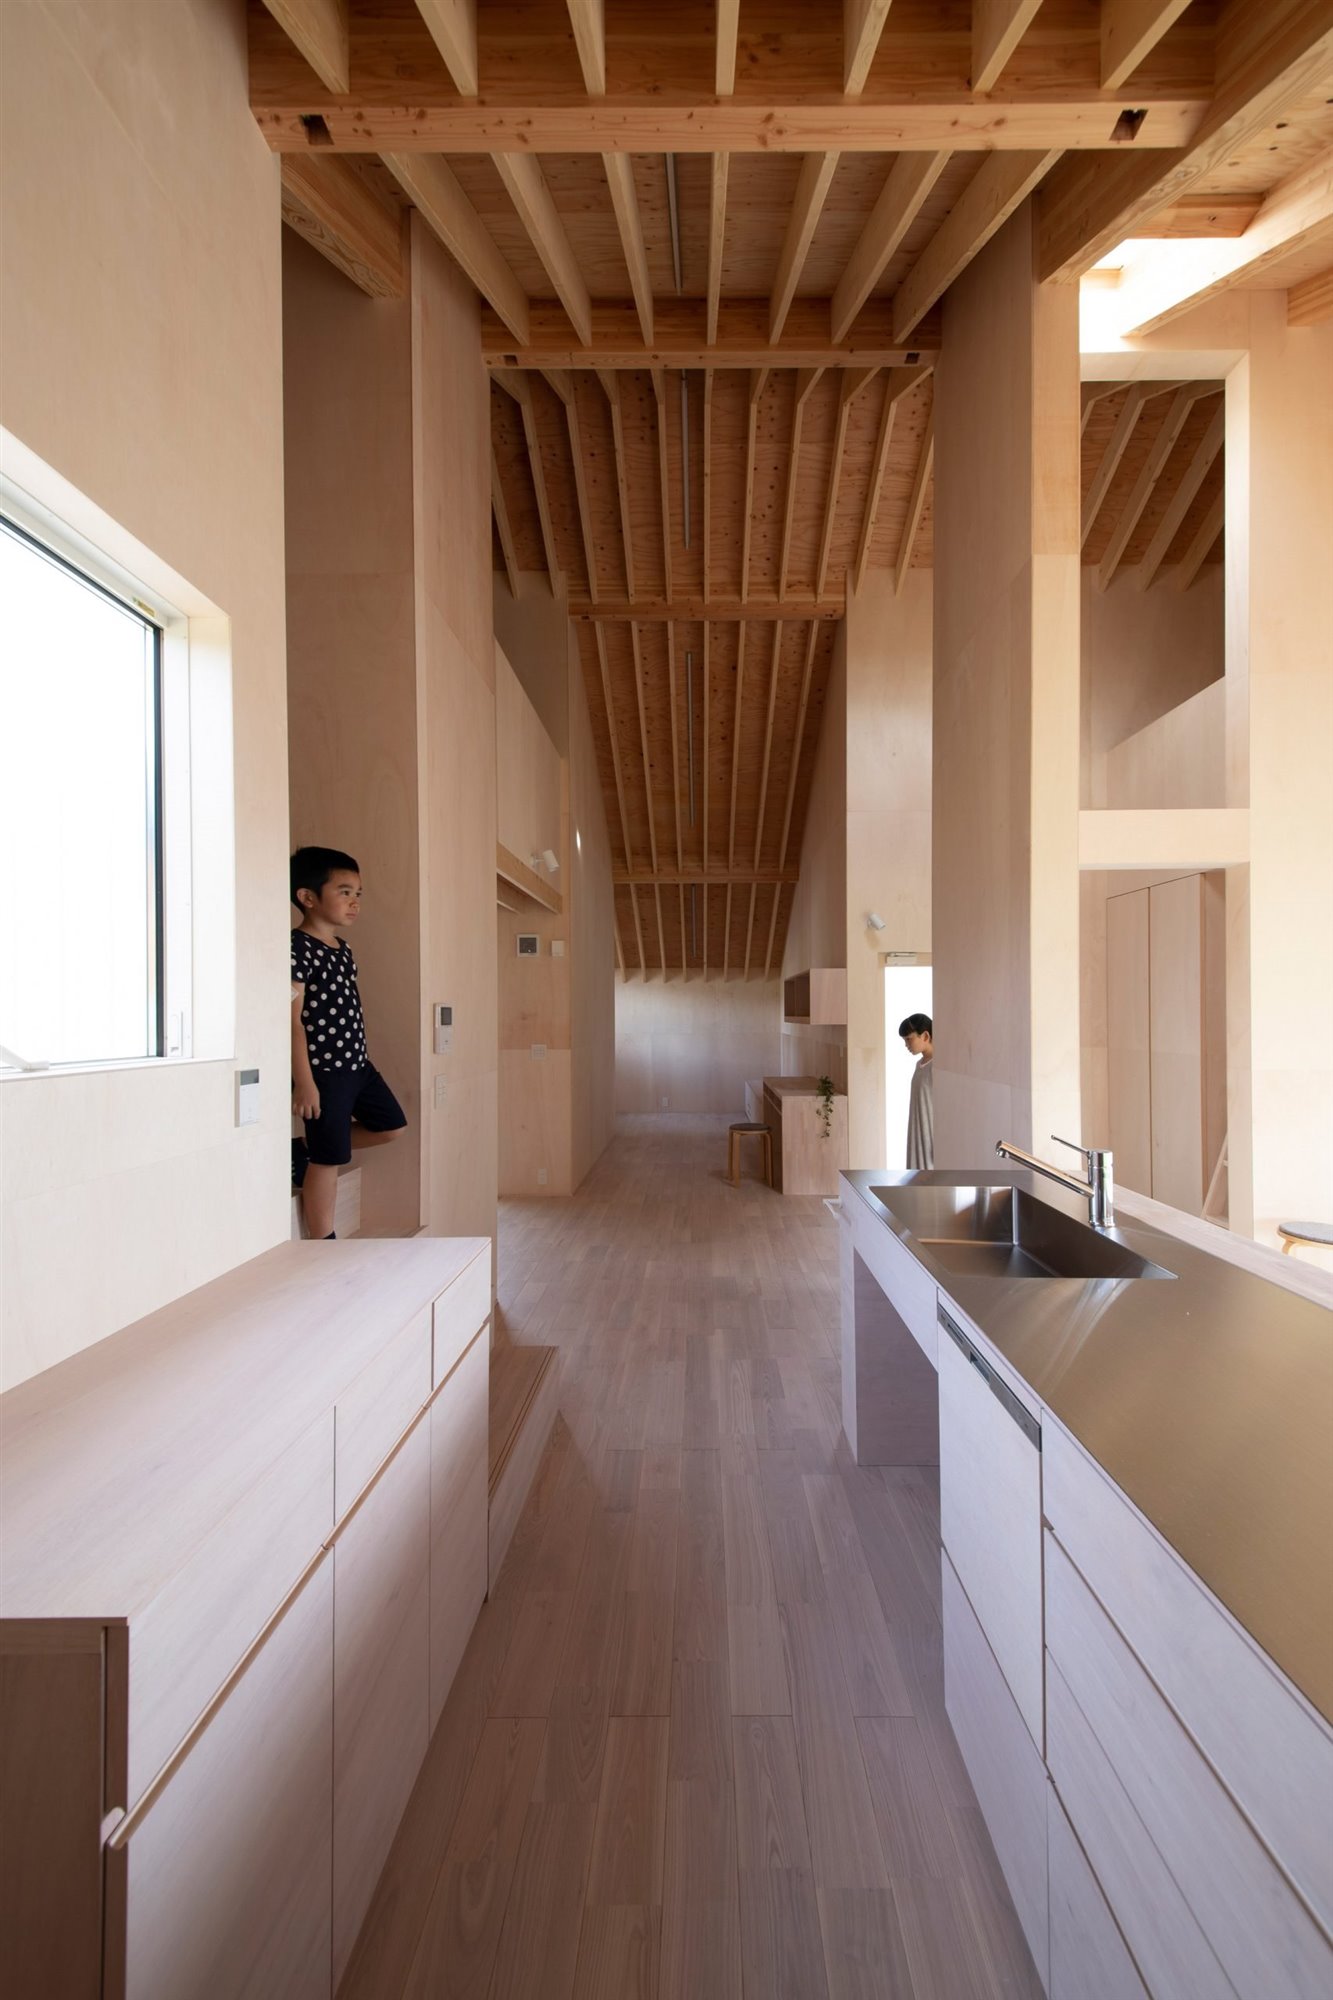 Casa en japon de los arquitectos Katsutoshi Sasaki + Associates con interiores de madera